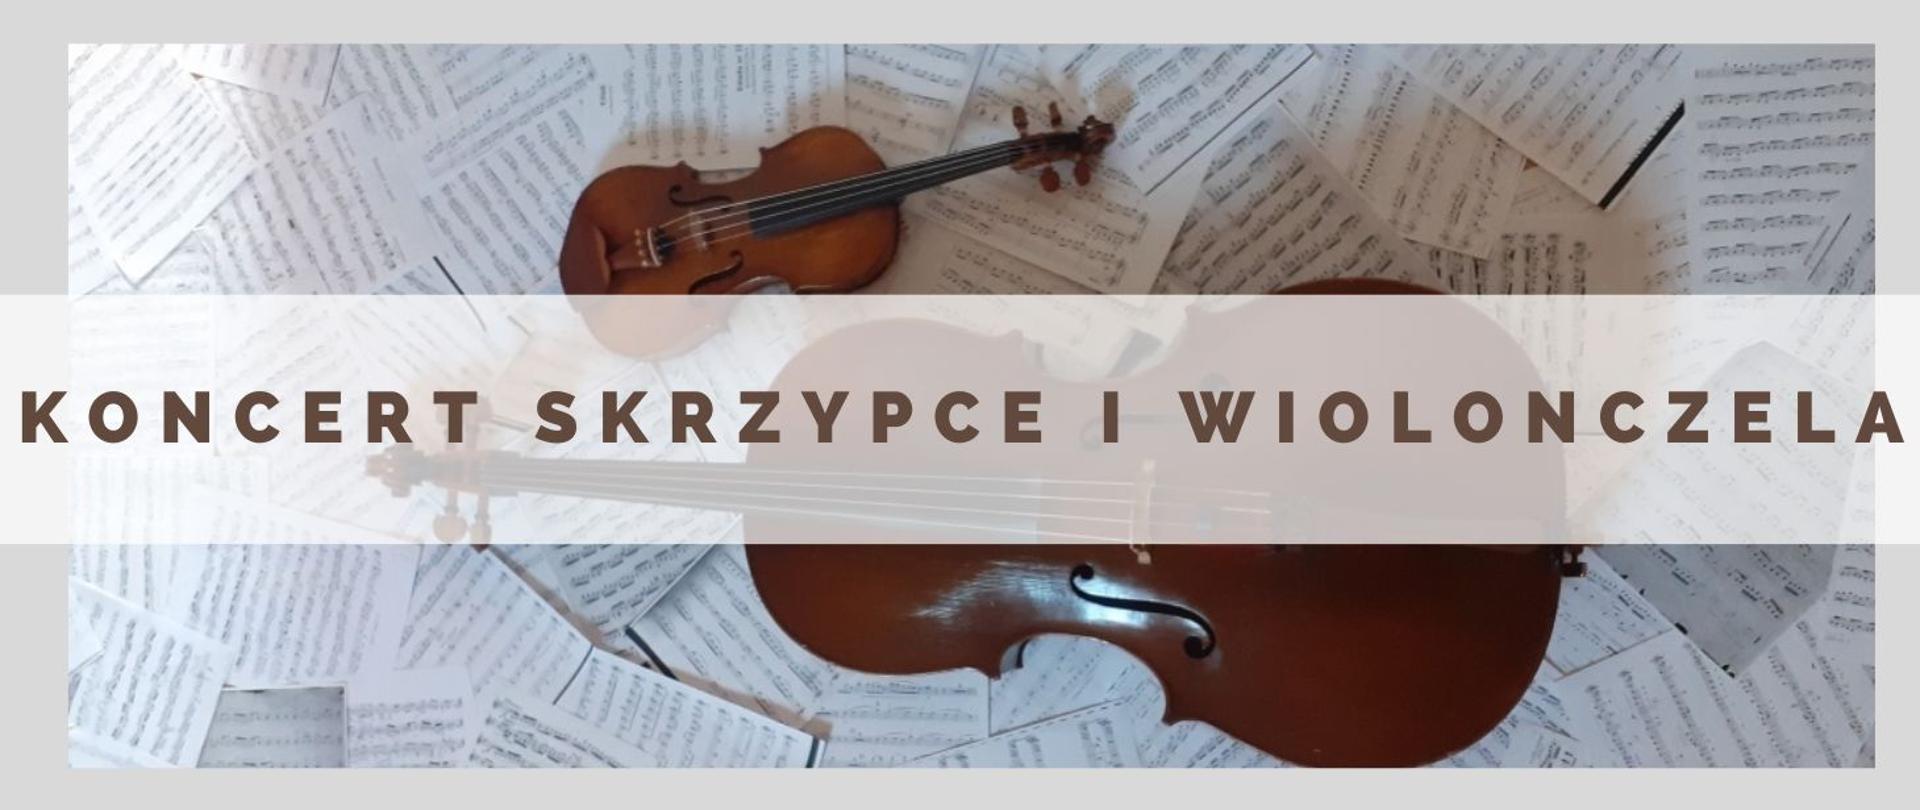 Grafika przedstawiająca skrzypce i wiolonczelę na tle porozrzucanych kartek z nutami. Pośrodku napis koncert skrzypce i wiolonczela.